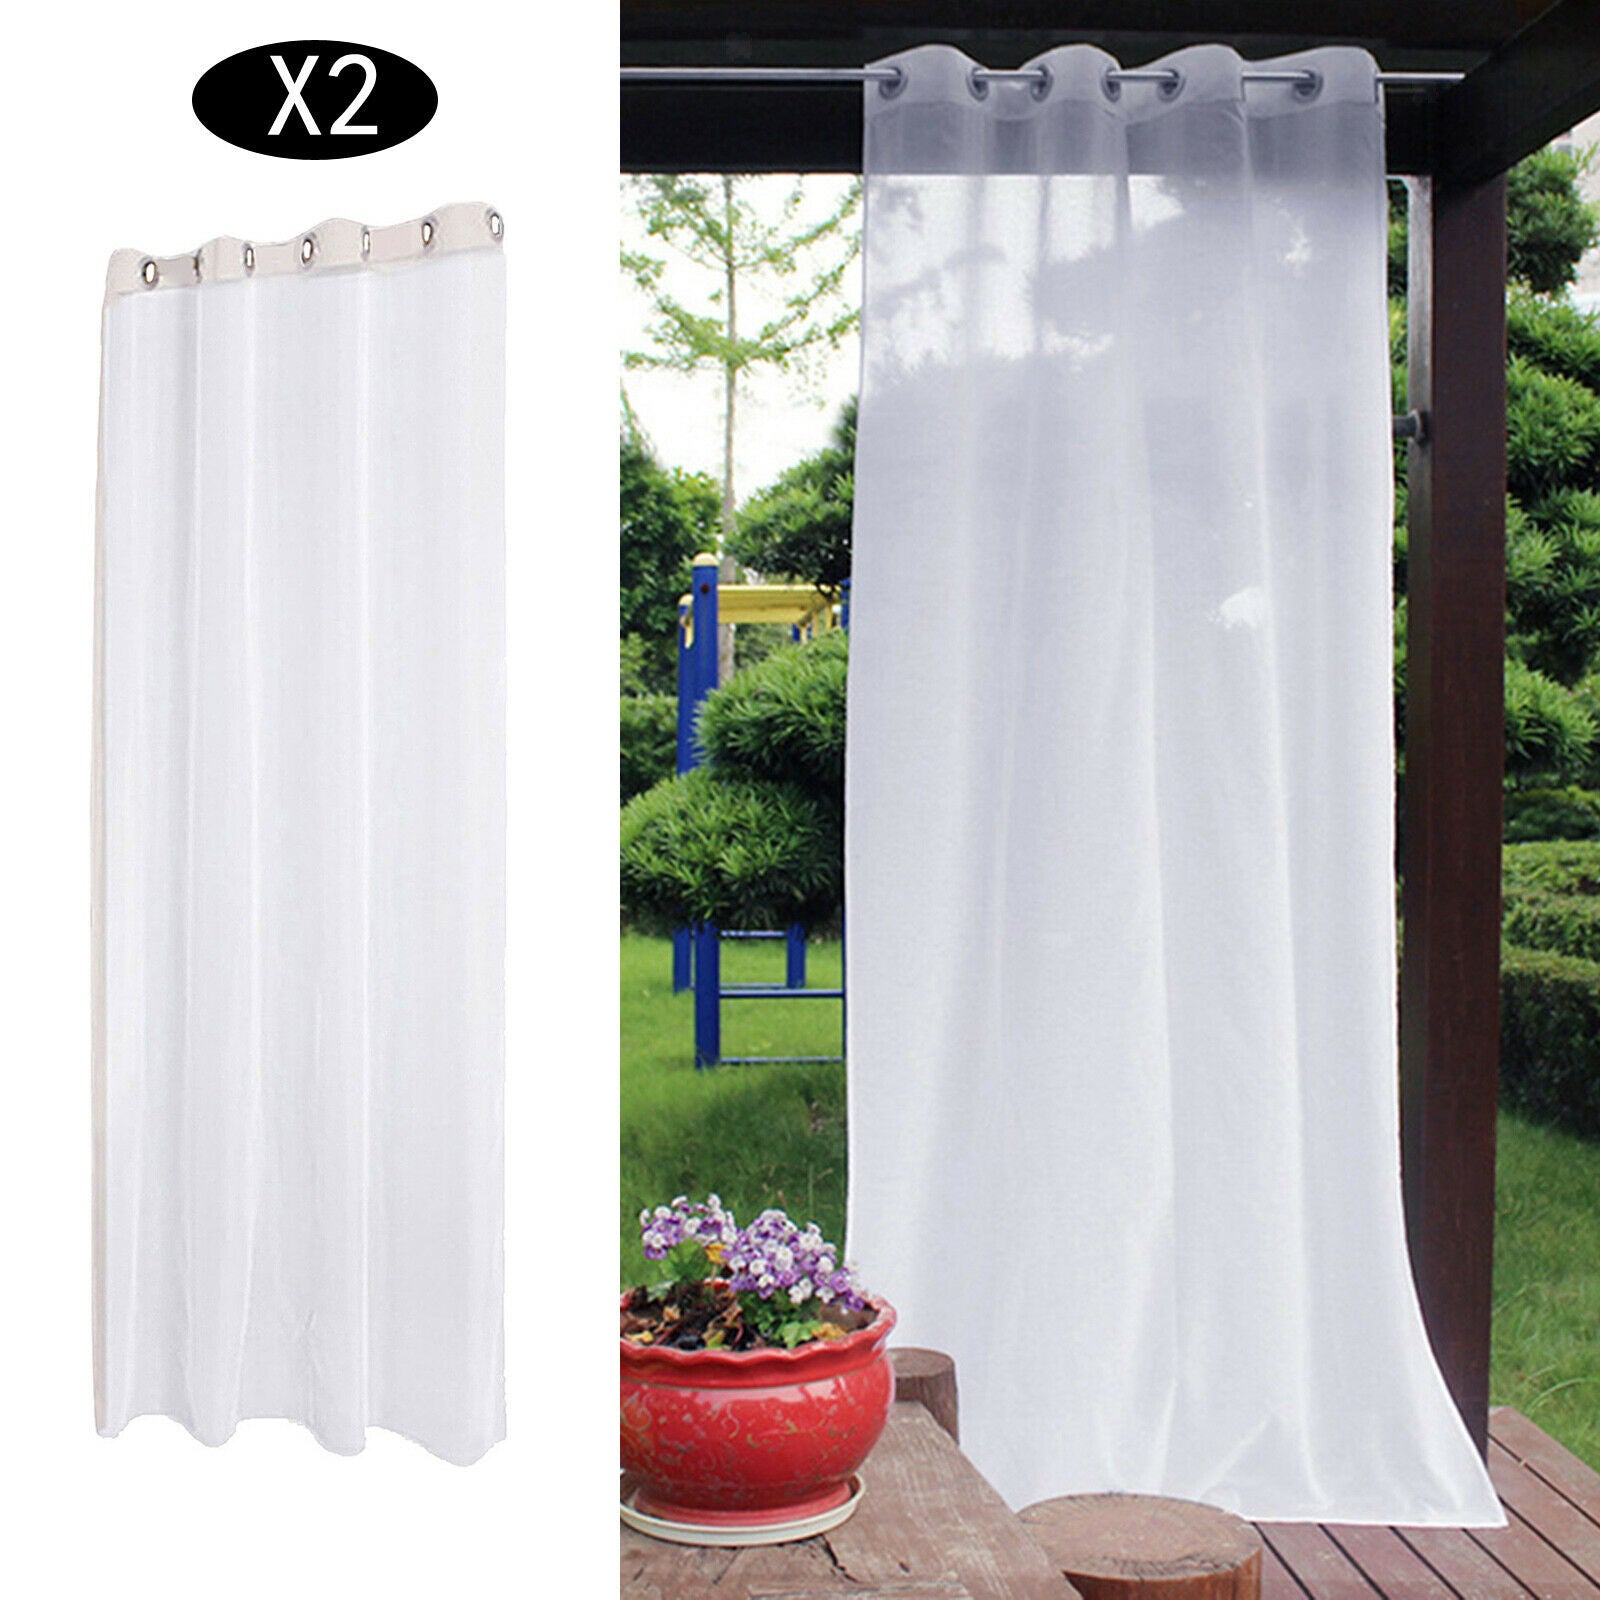 2pcs Decor White Sheer Curtain Single Panel Porch Deck Dustproof Drape Voile